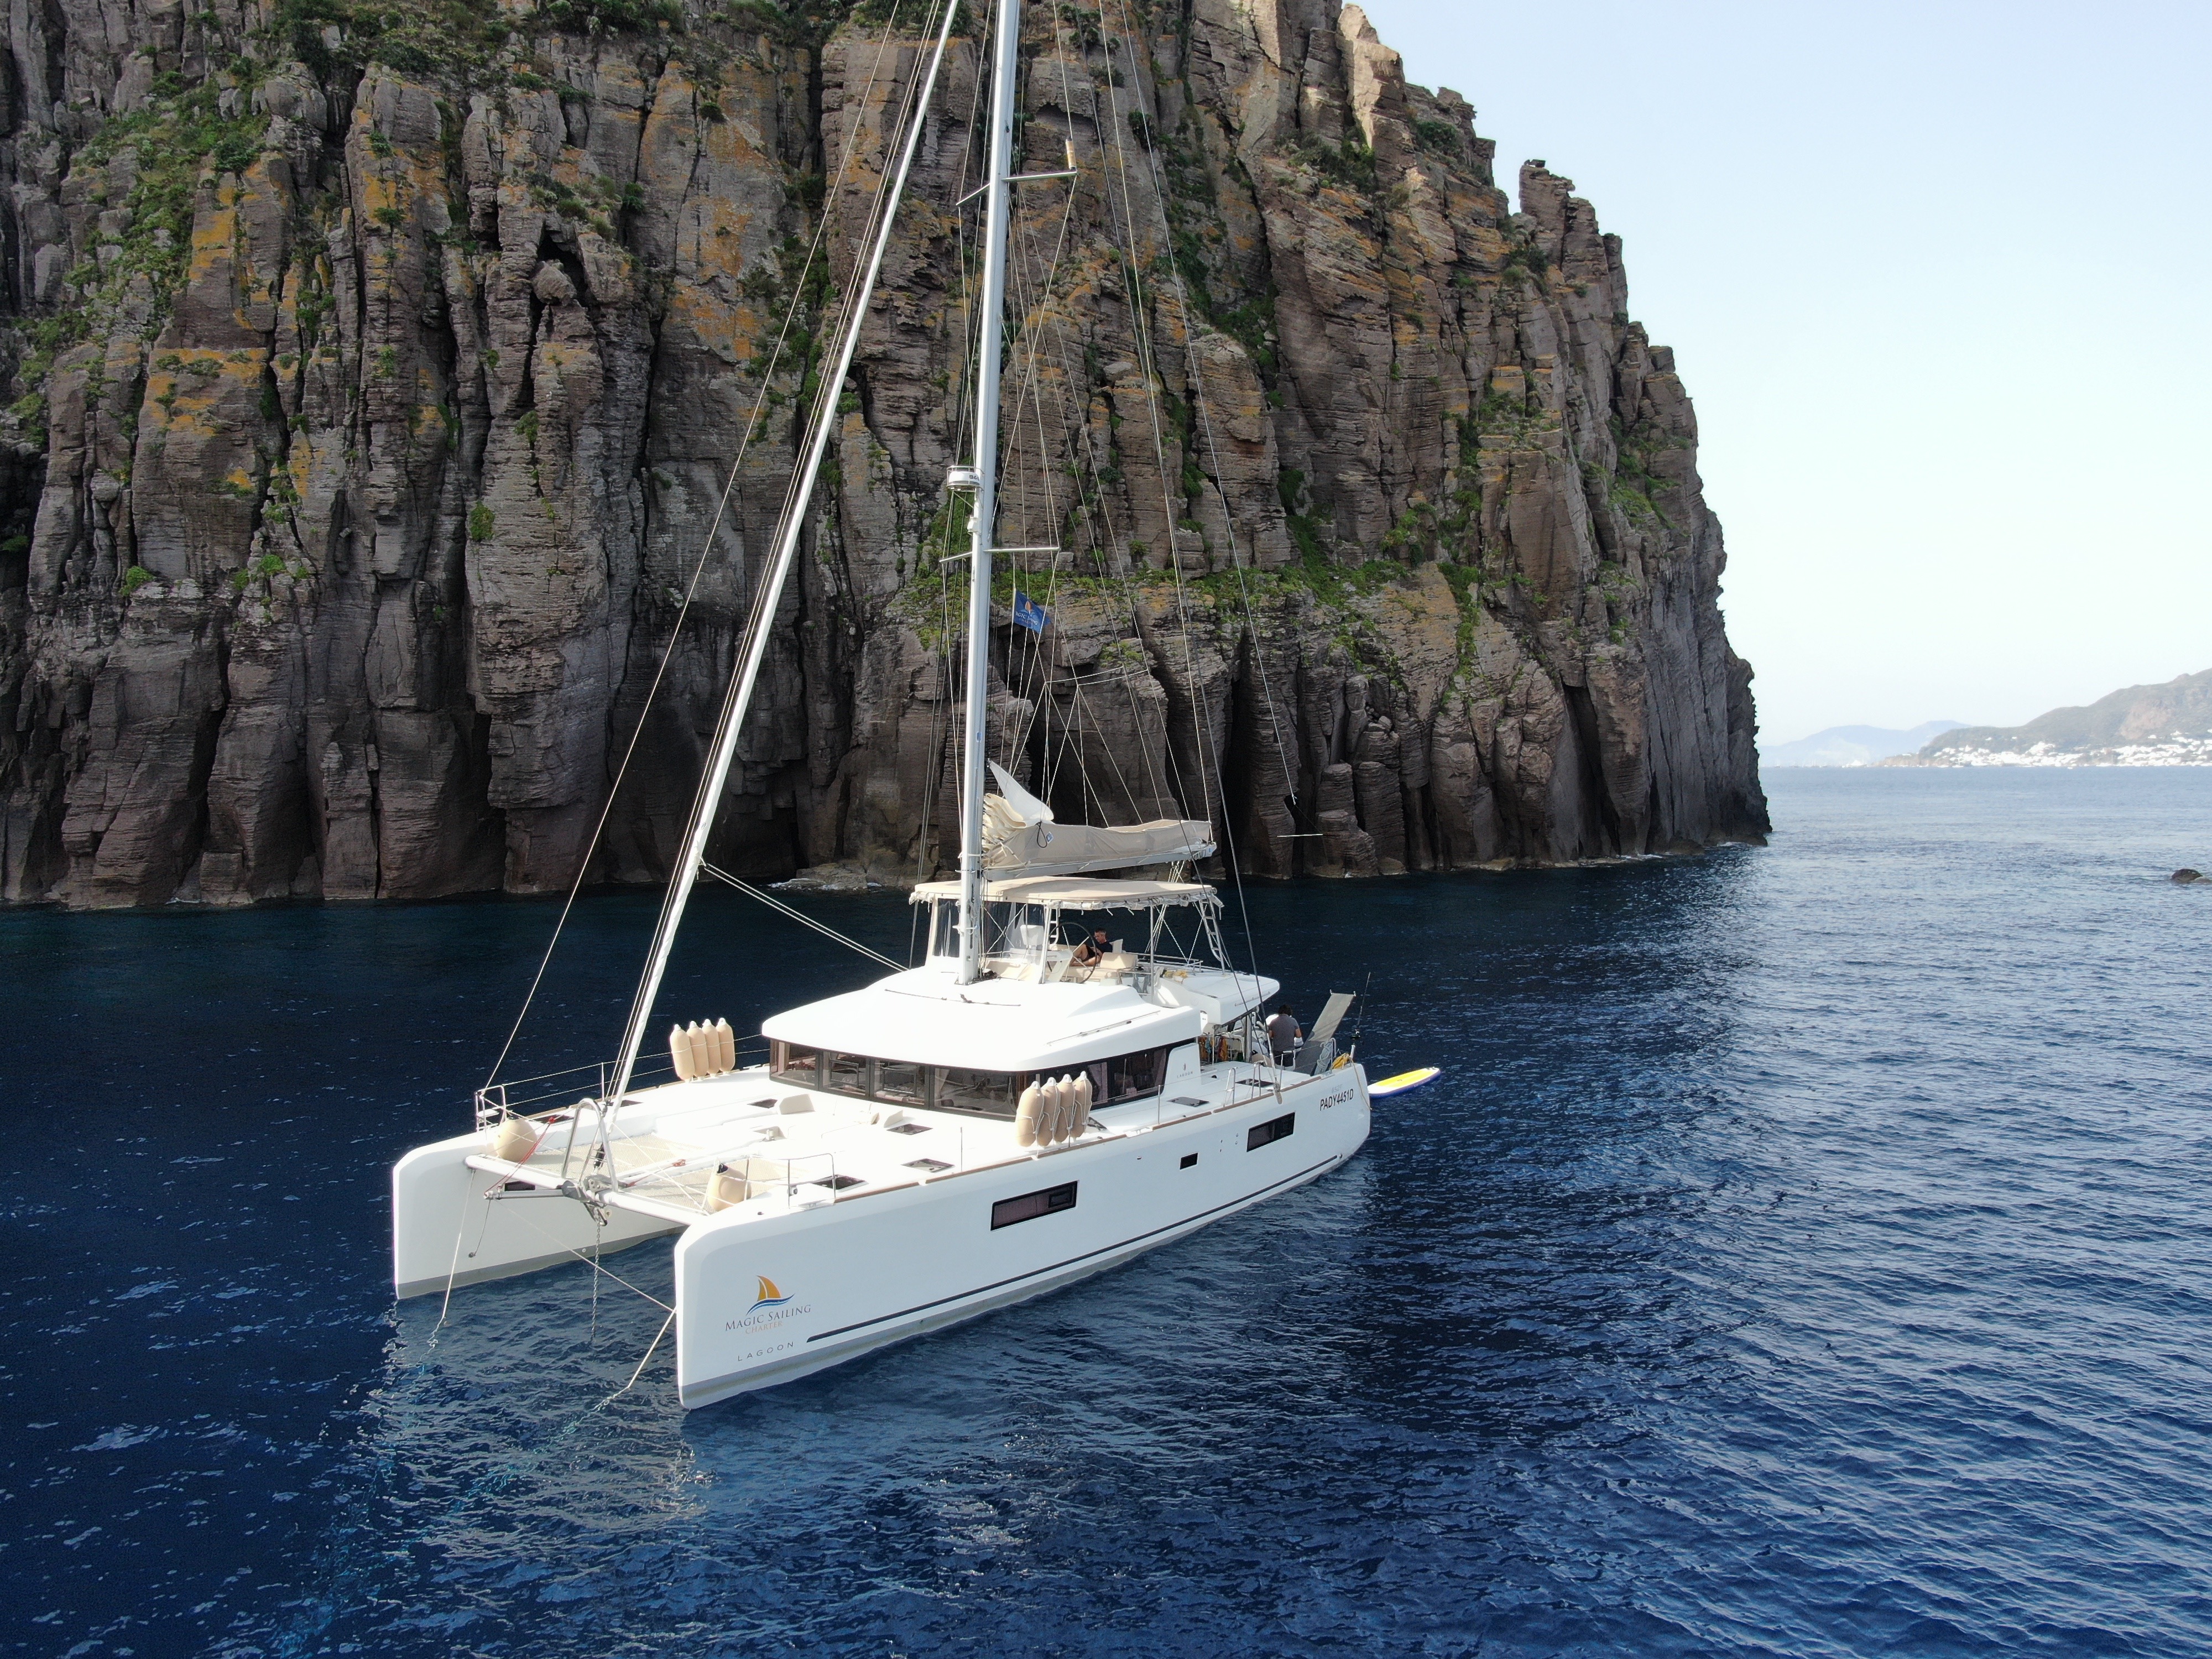 Lagoon 52F - Luxury yacht charter Sicily & Boat hire in Italy Sicily Aeolian Islands Capo d'Orlando Capo d'Orlando Marina 1